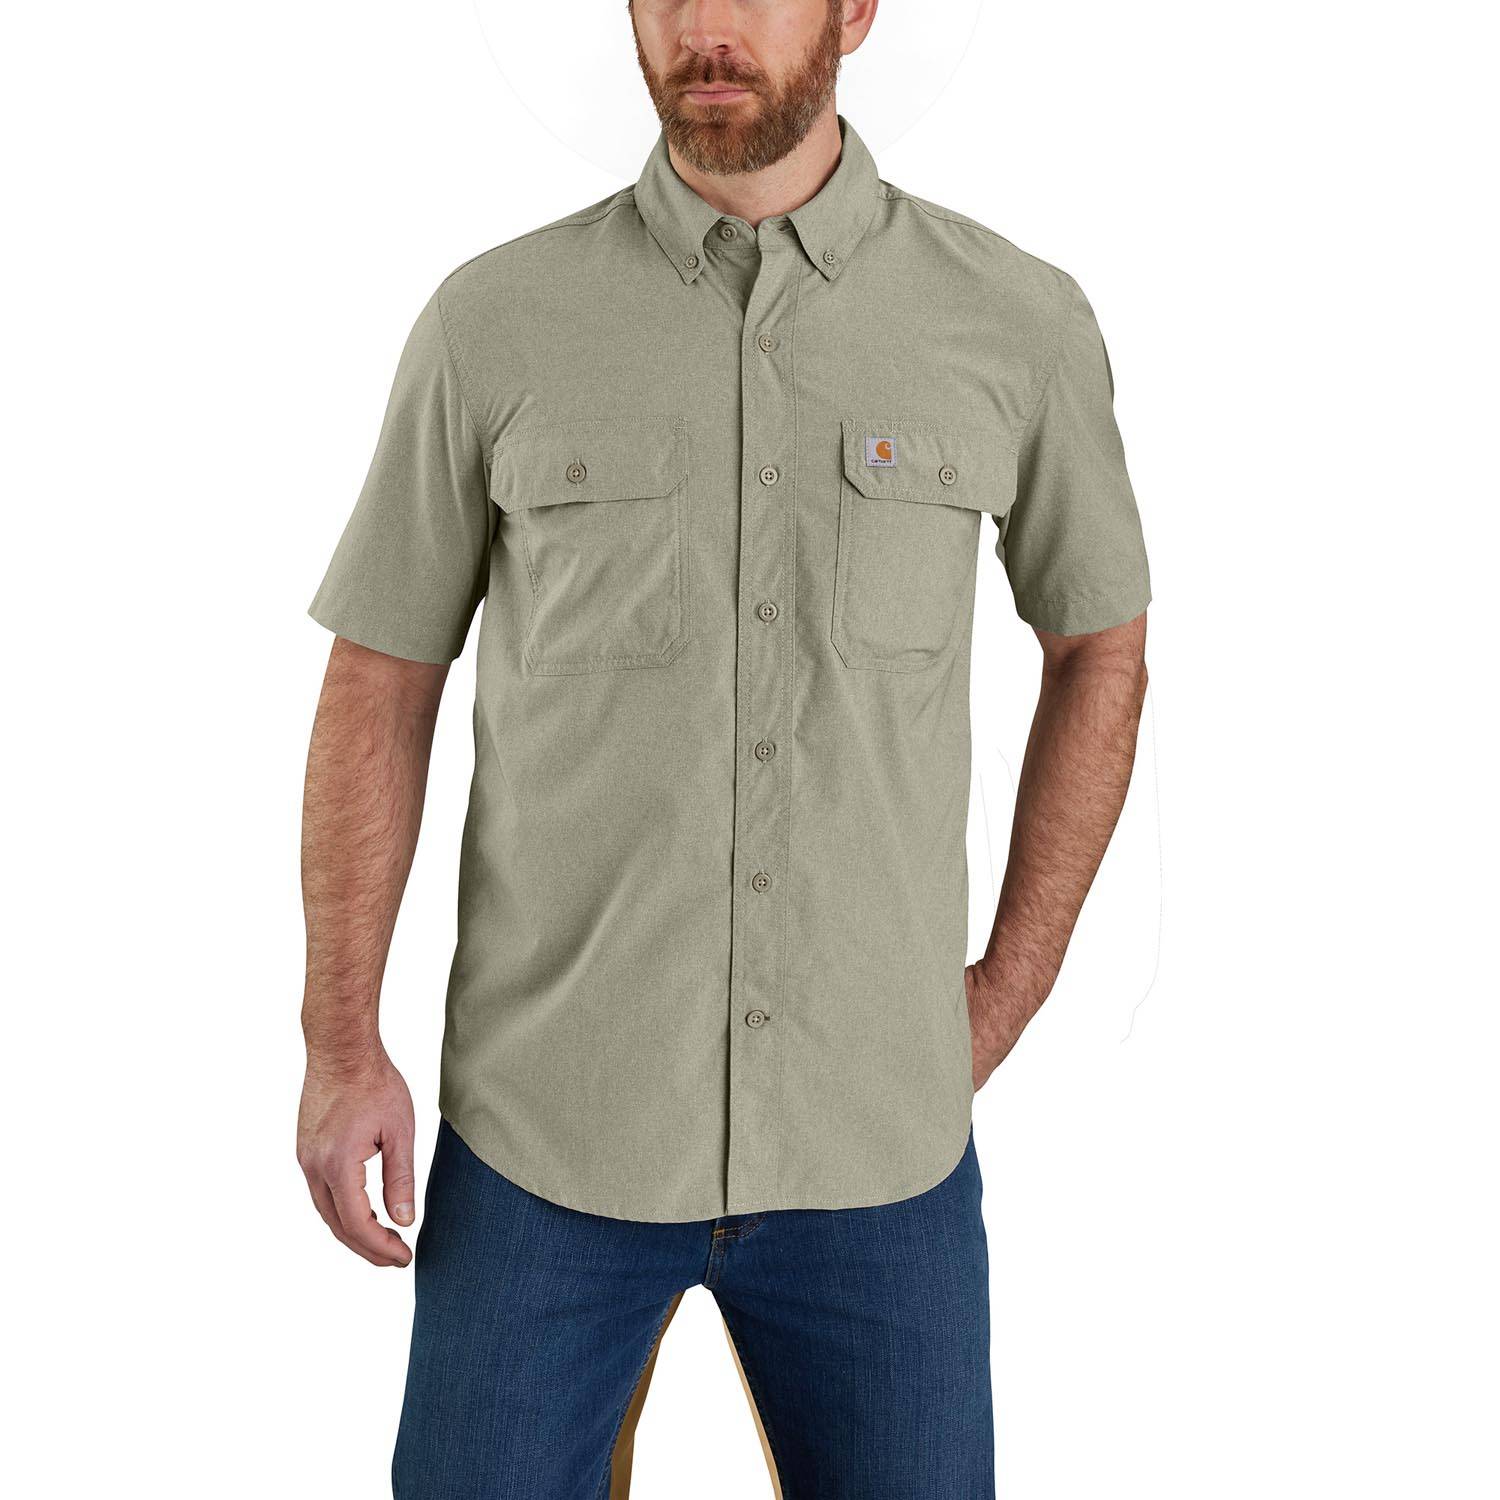 Carhartt Forced Relaxed Fit Lightweight Short-Sleeve Shirt